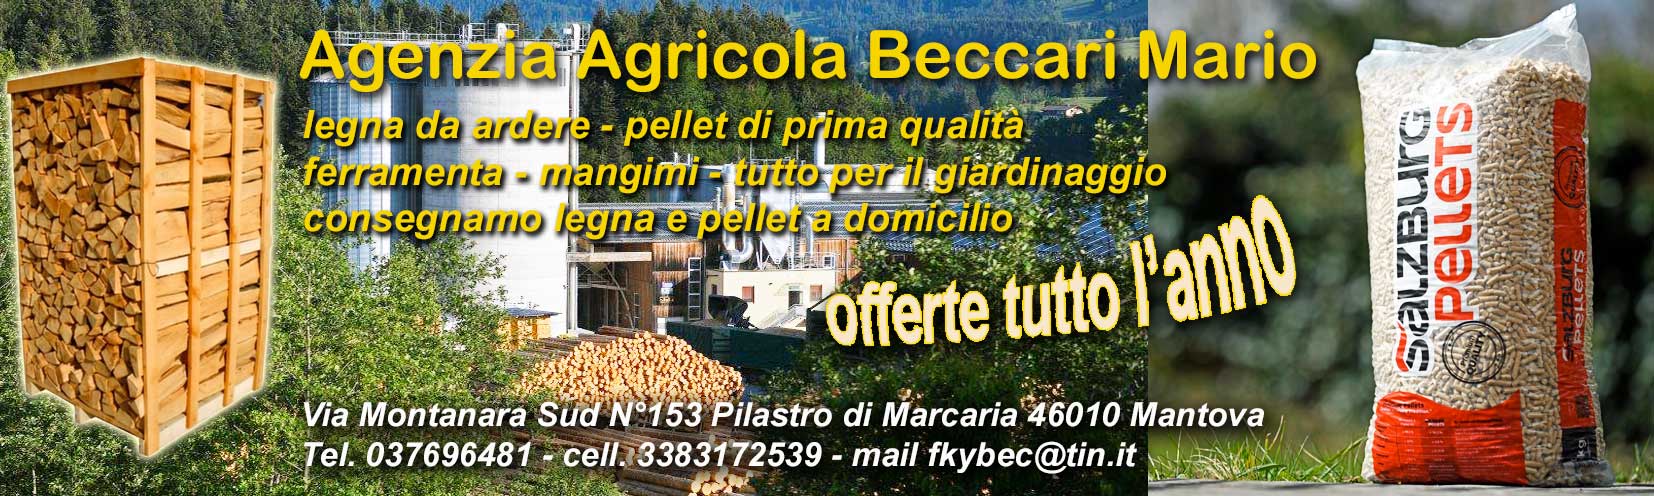 Azienda Agricola Beccari Mario